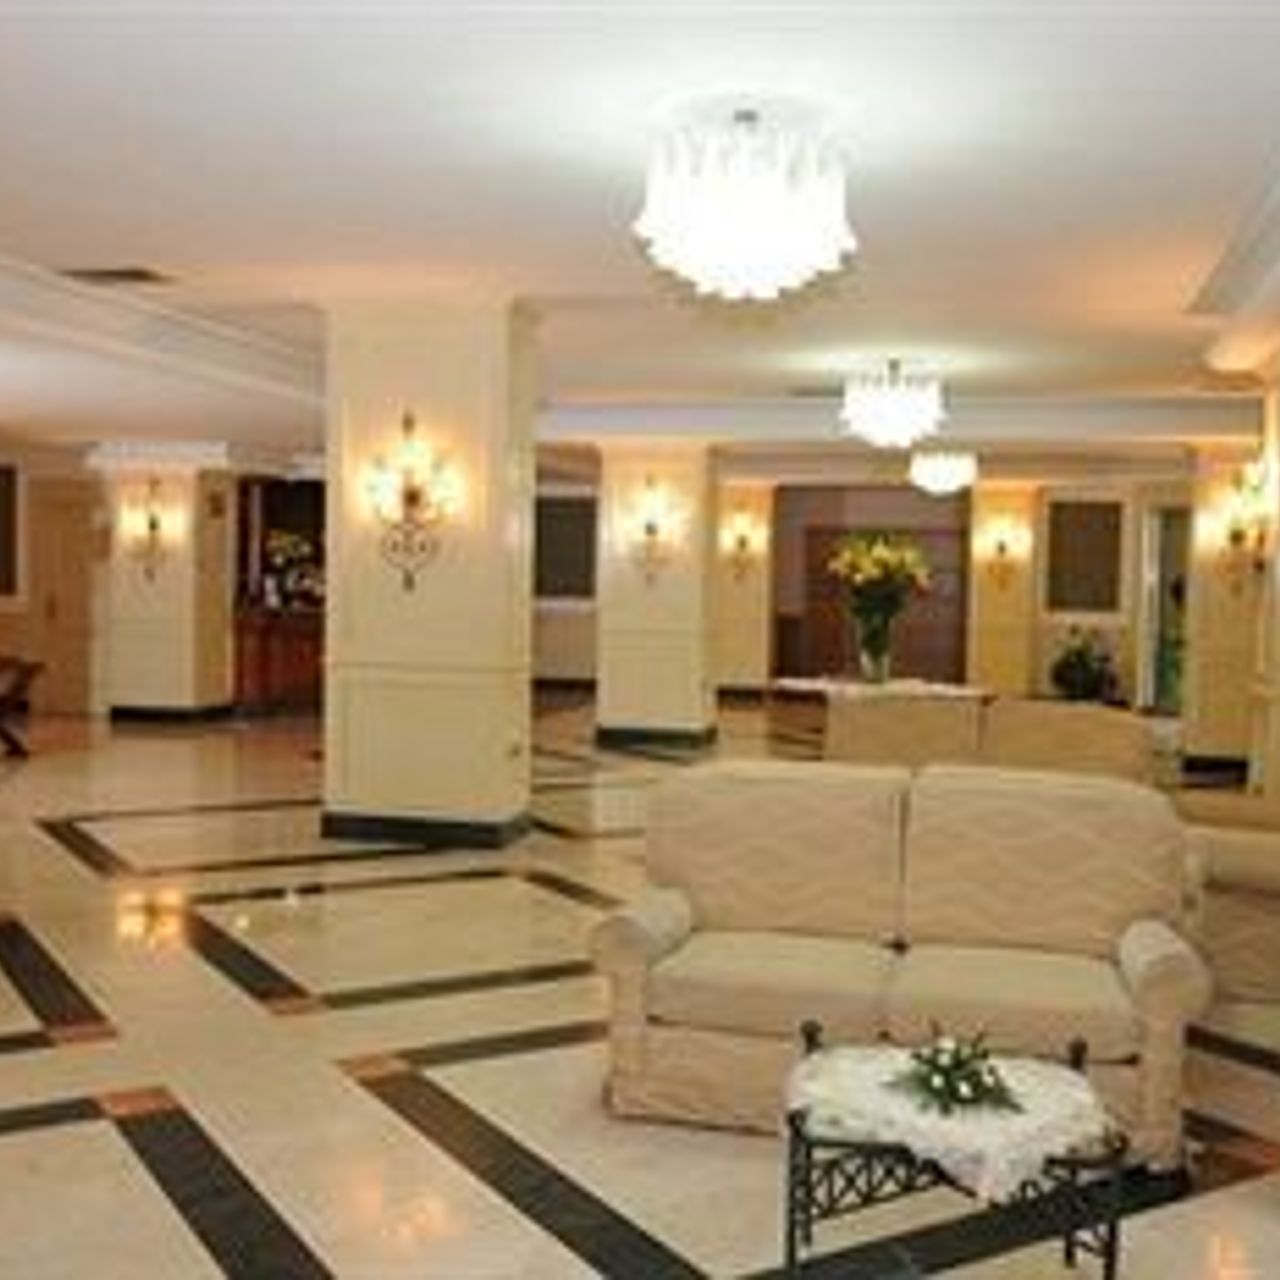 La Lanterna Hotel Ristorante - Villaricca - Great prices at HOTEL INFO